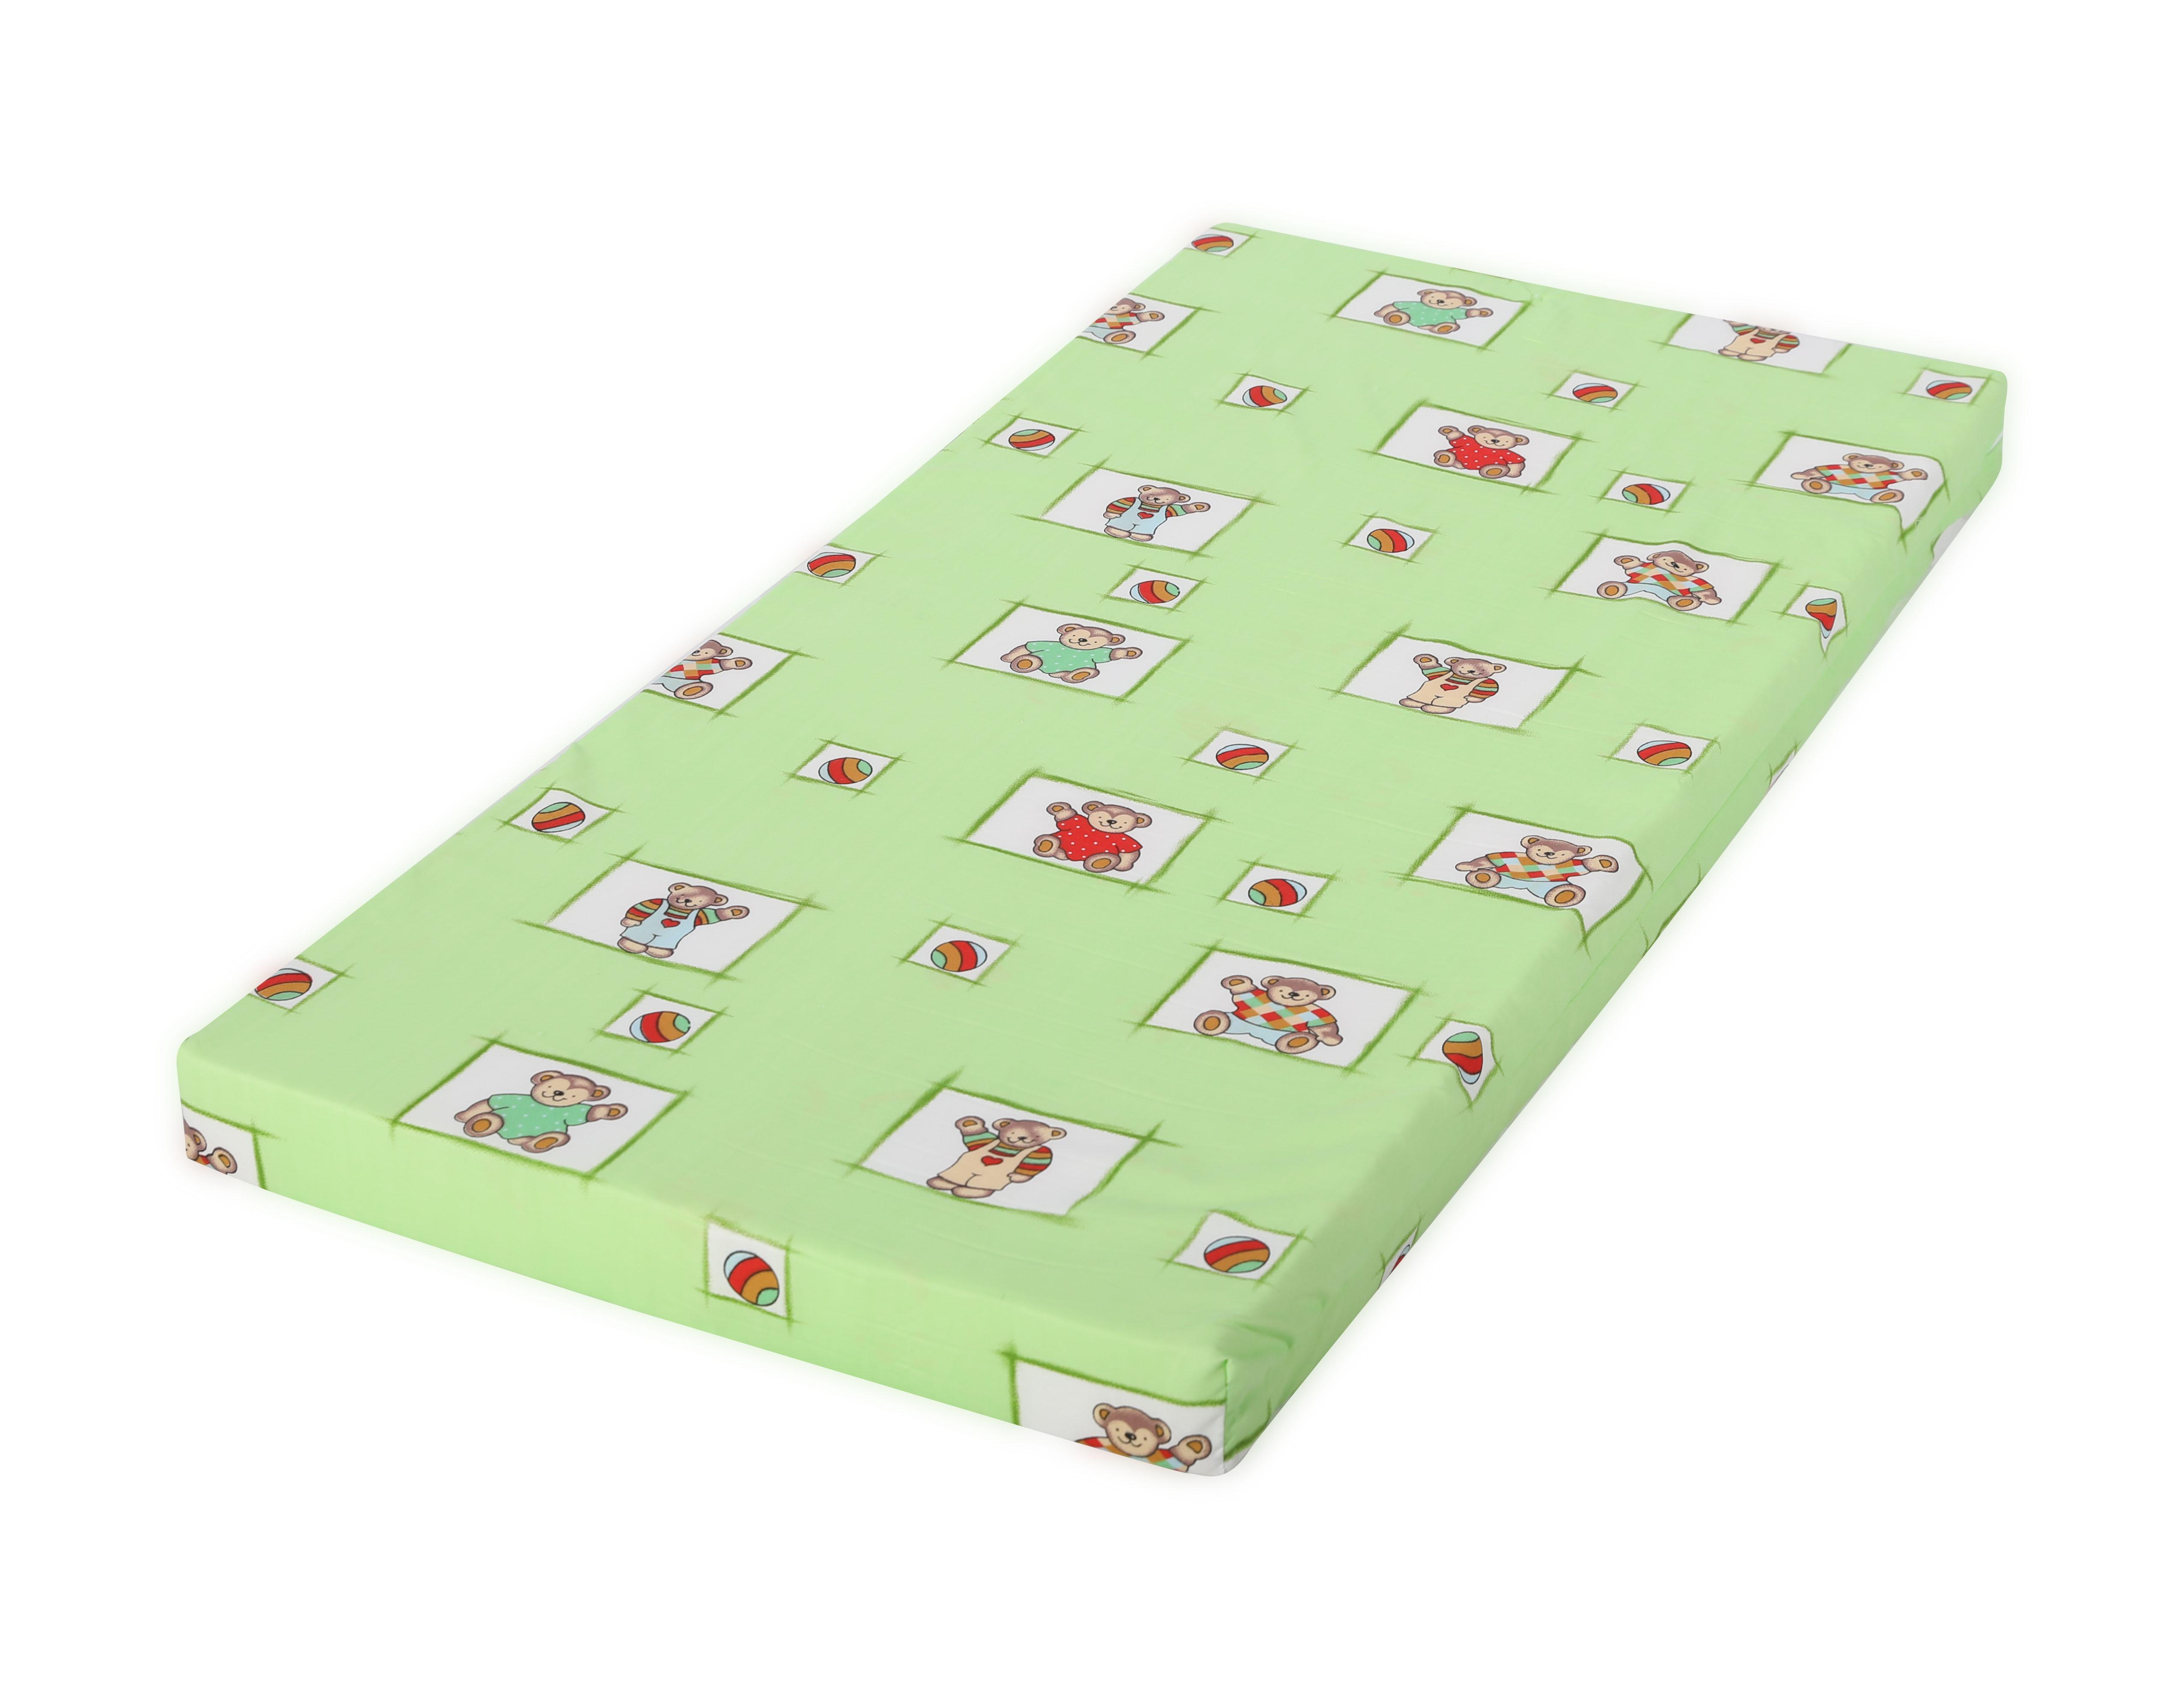 Saltele paturi copii - Saltea Classic din spuma 60/120/6 cm, Imprimeuri Colorate, bebelorelli.ro